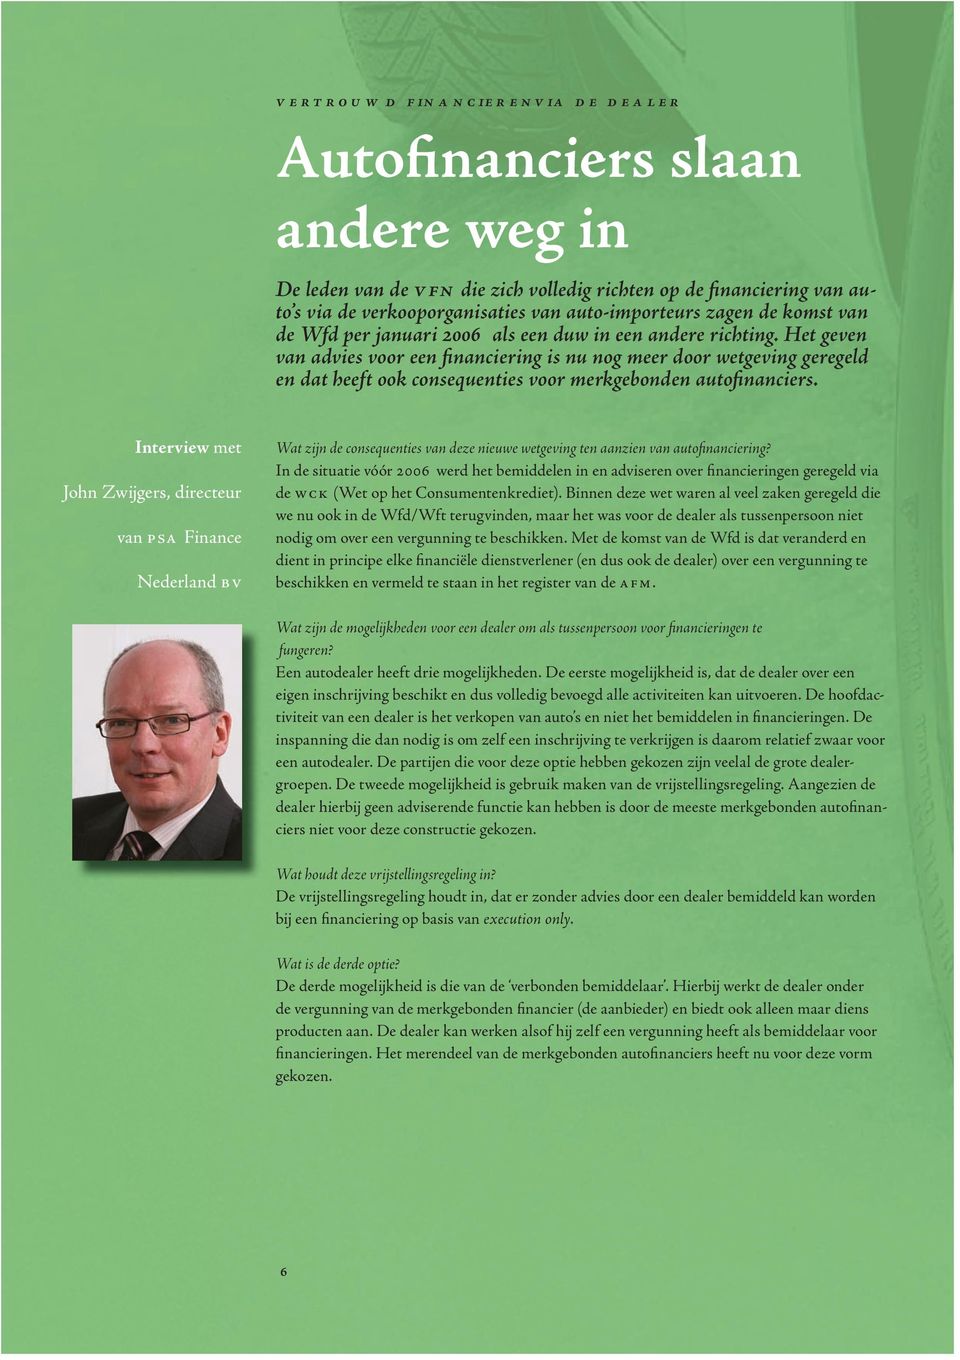 Interview met John Zwijgers, directeur van Finance Nederland Wat zijn de consequenties van deze nieuwe wetgeving ten aanzien van autofinanciering?